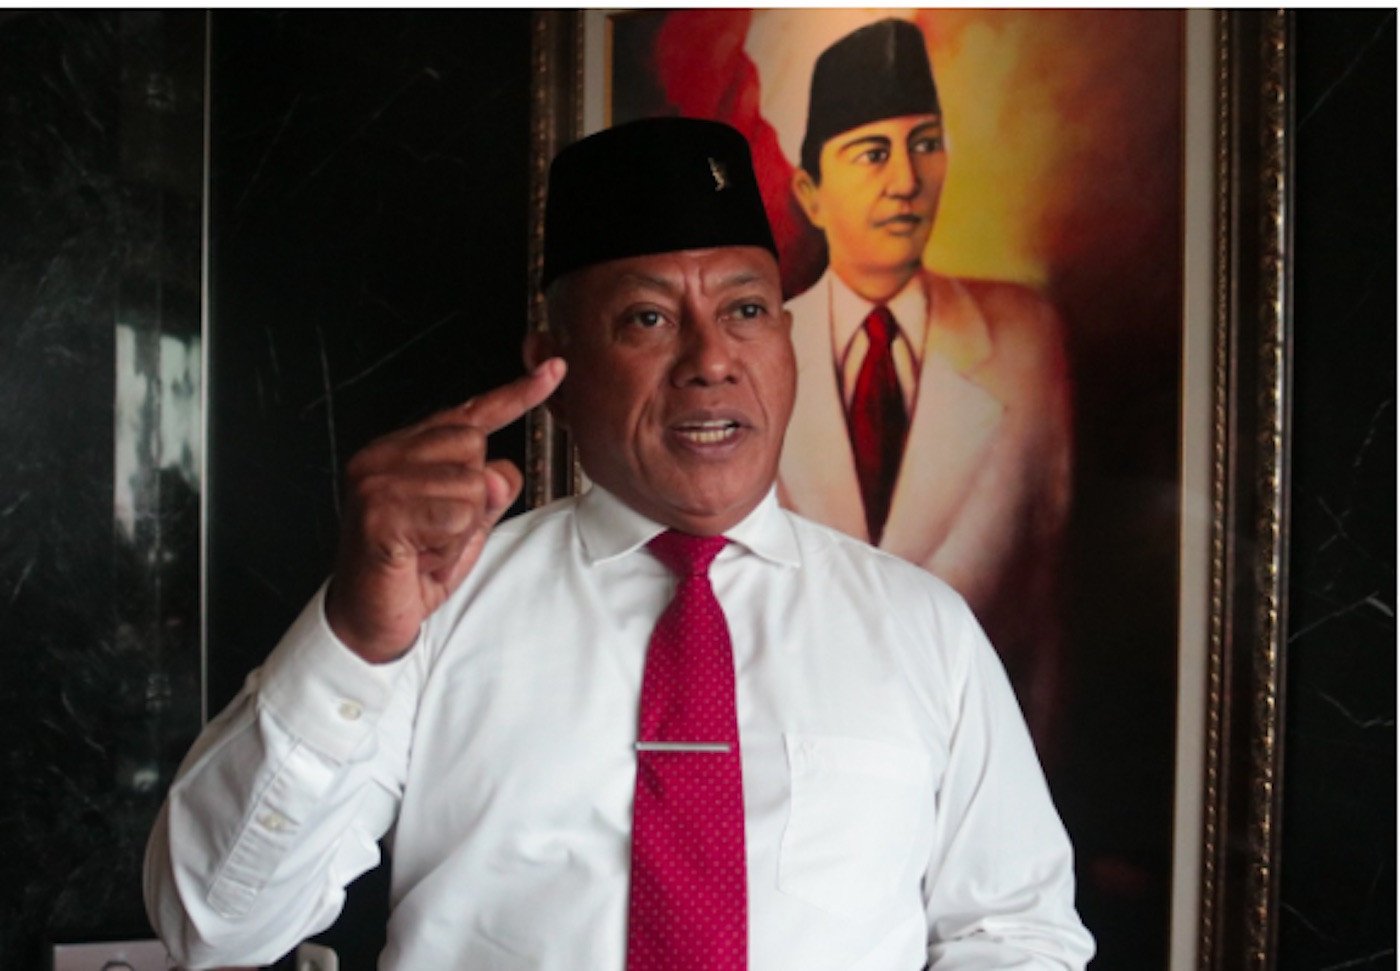 Ketua Bidang Kehormatan Dewan Pimpinan Pusat DPP PDI Perjuangan Komarudin Watubun. Foto: Dokumentasi pribadi